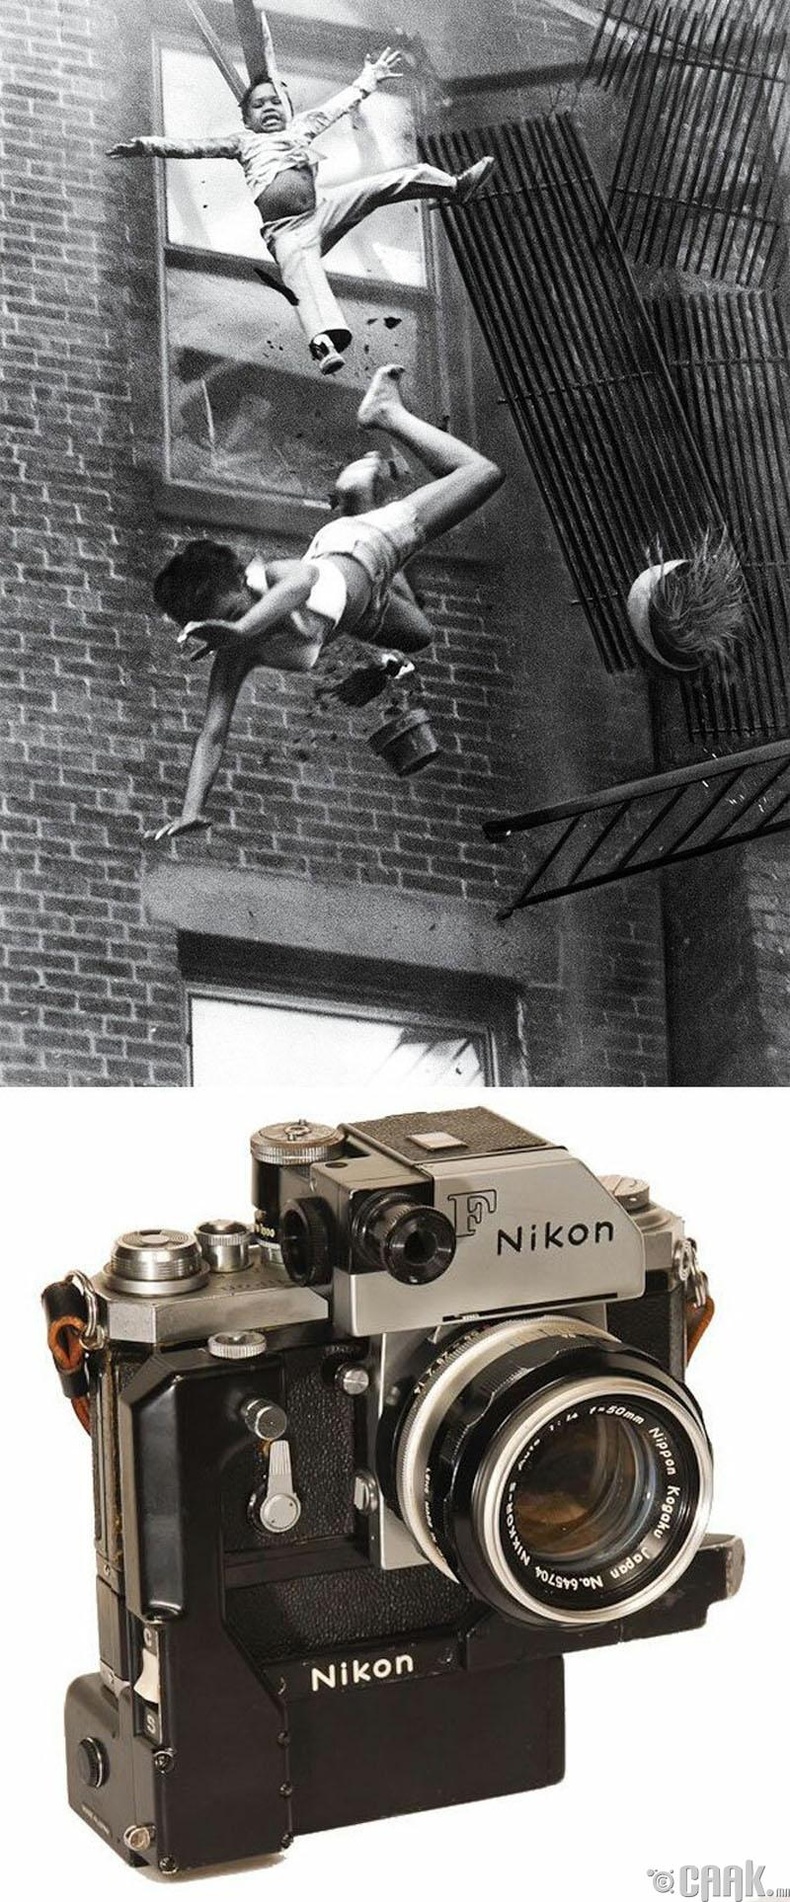 "Ослын шат", Станли Форман, 1975 он. "Nikon F" камер